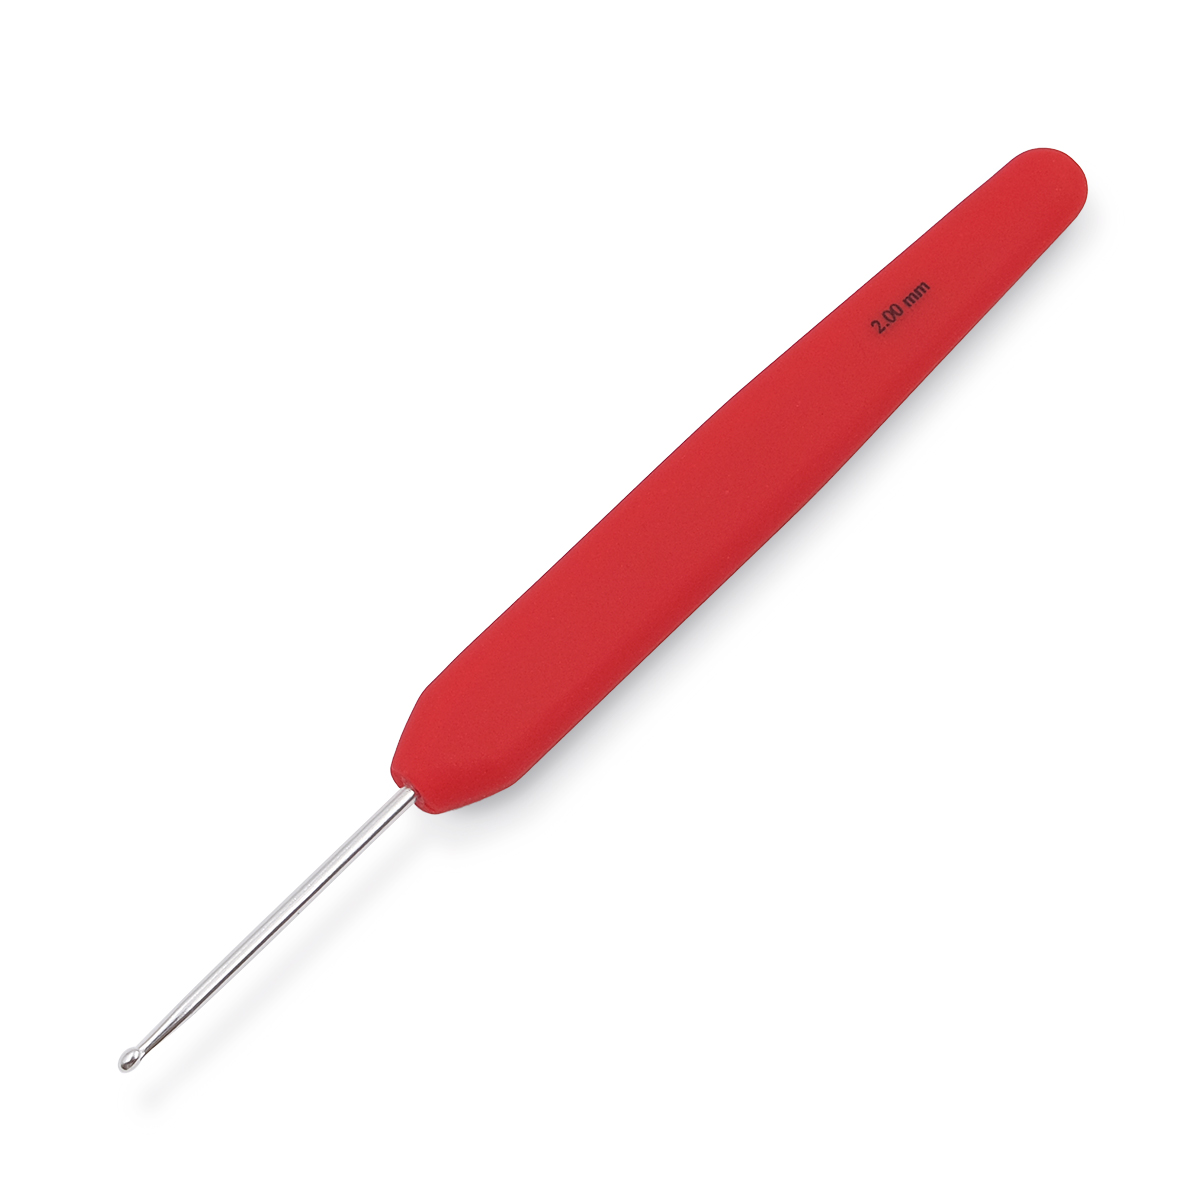 Крючок для вязания с эргономичной ручкой Waves 2мм, алюминий, серебро/розмарин, KnitPro